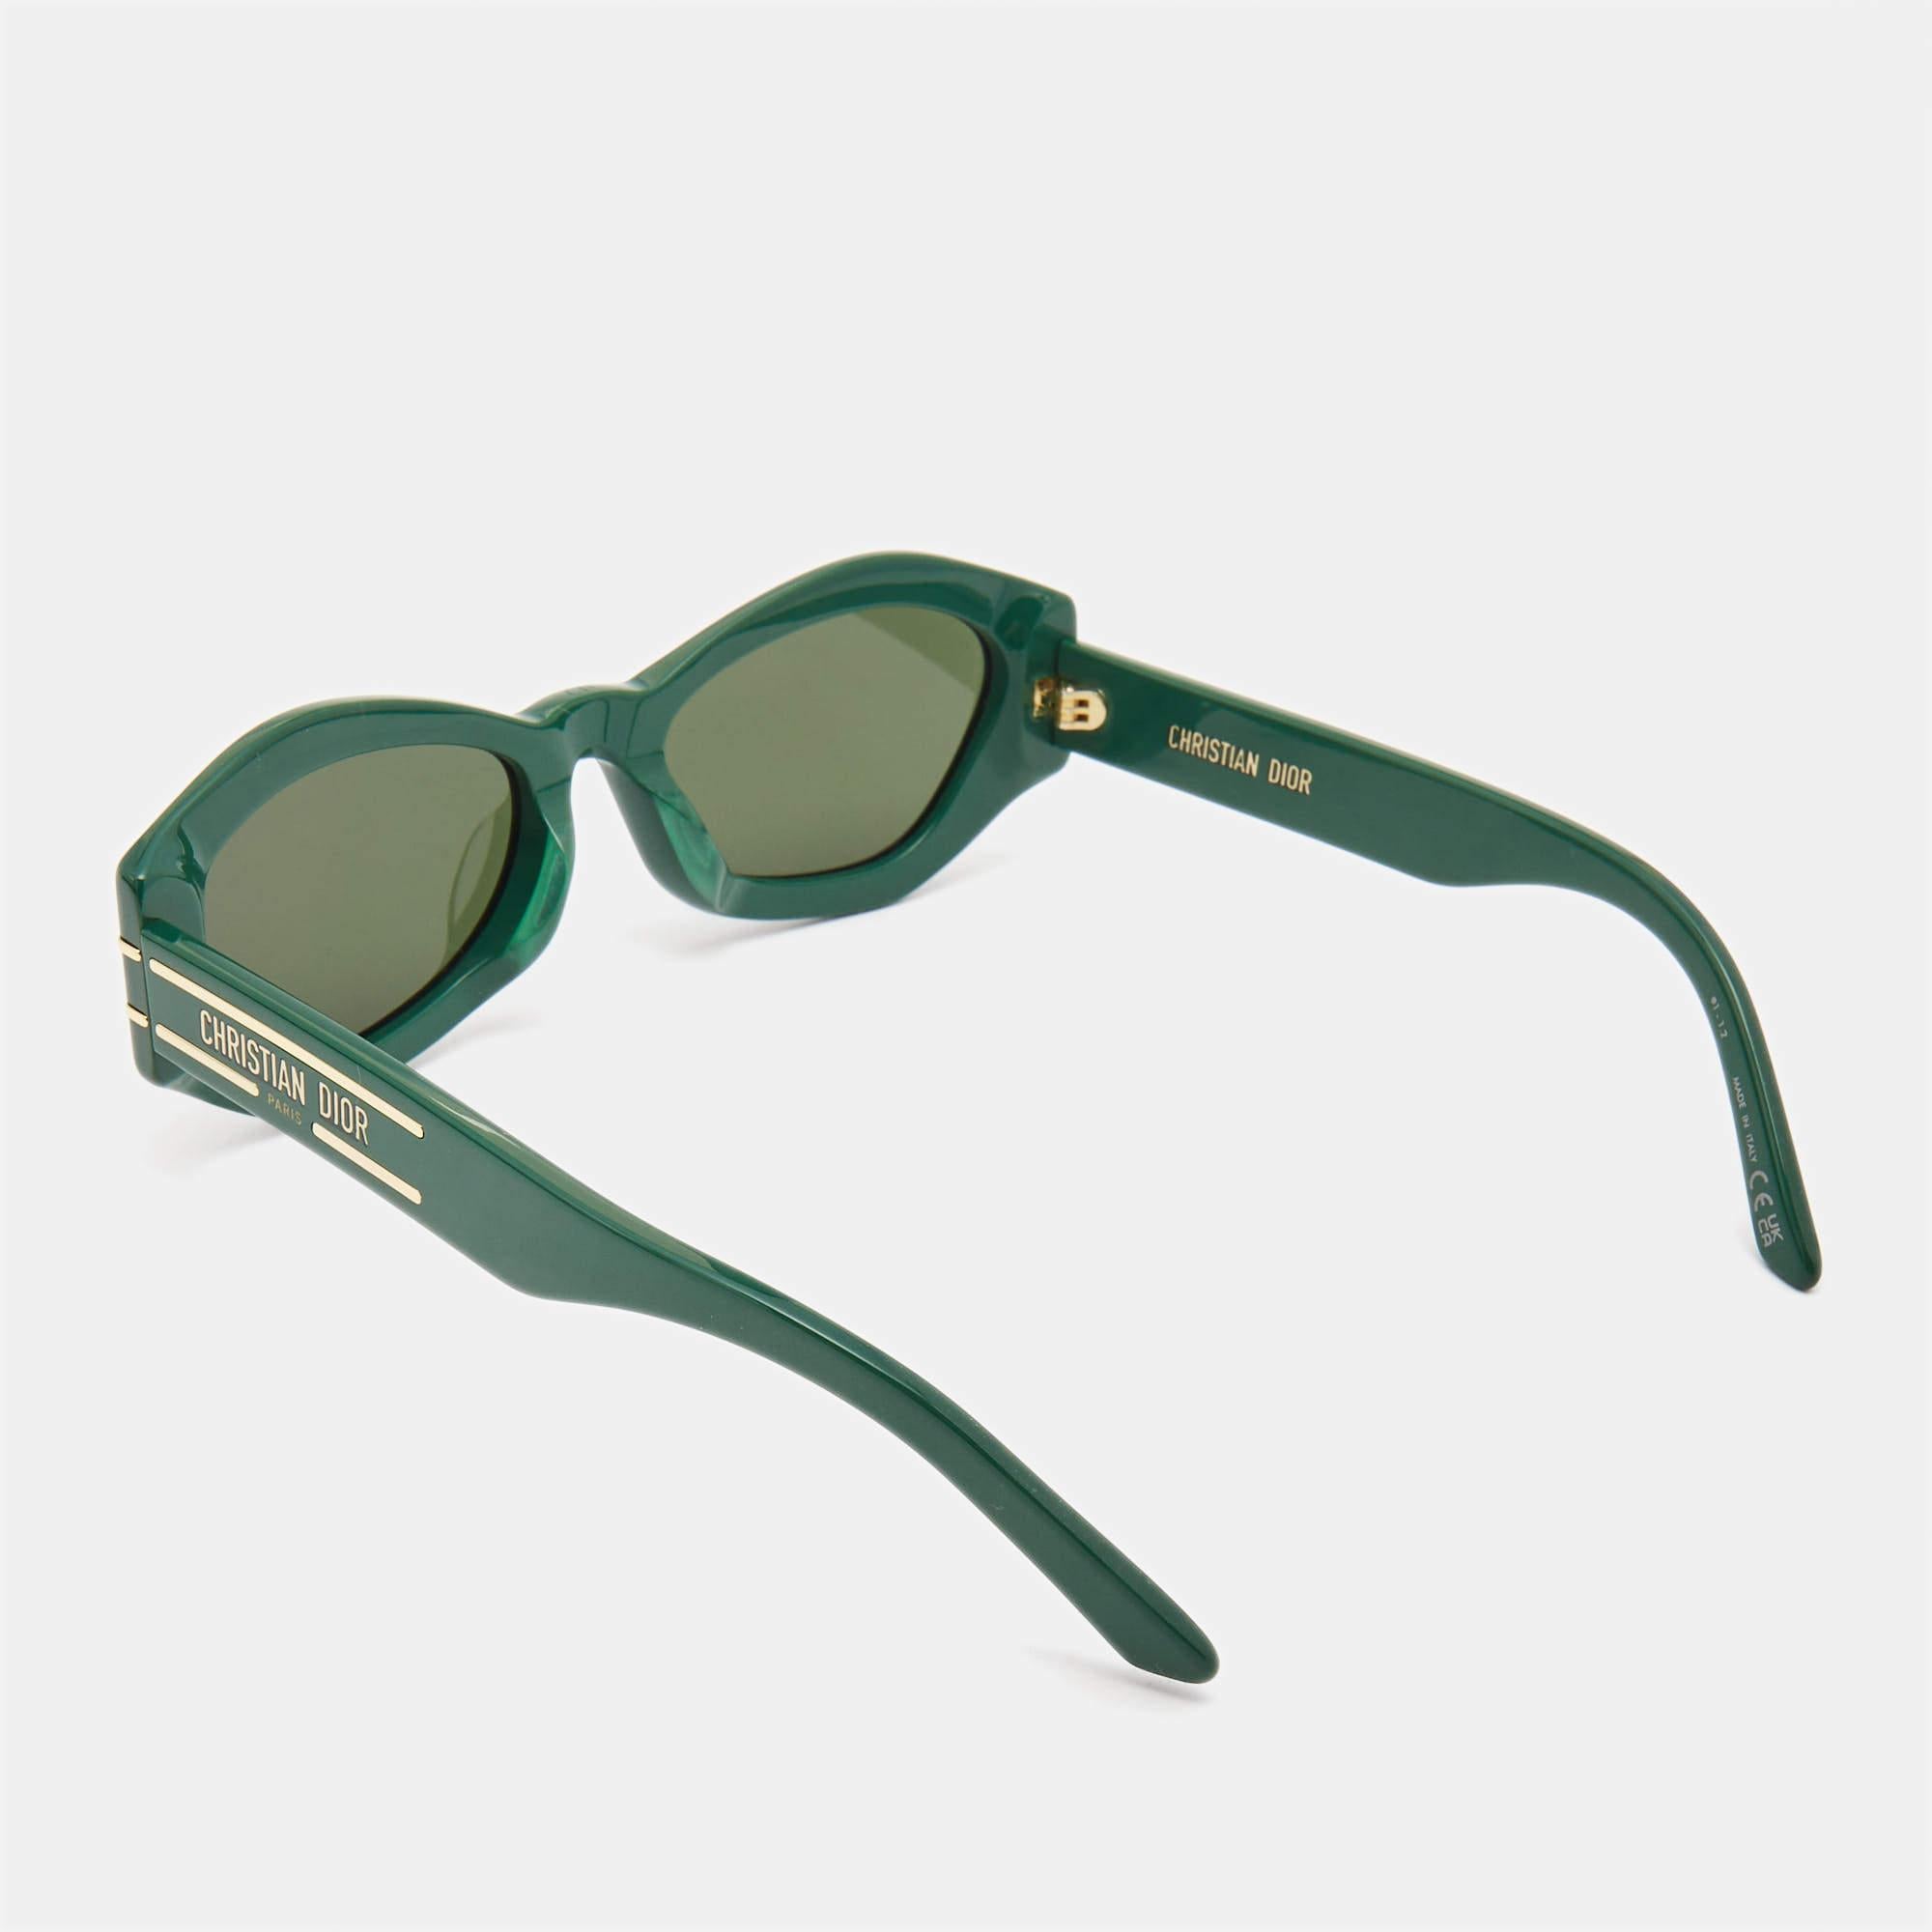 Auch mit Ihren Accessoires können Sie den richtigen Stil unterstreichen. Entscheiden Sie sich für Kreationen wie diese stilvolle Sonnenbrille von Dior, die genau das für Sie tut. Dieses Paar in einem schmeichelhaften Rahmen ist ein Kauf, von dem Sie